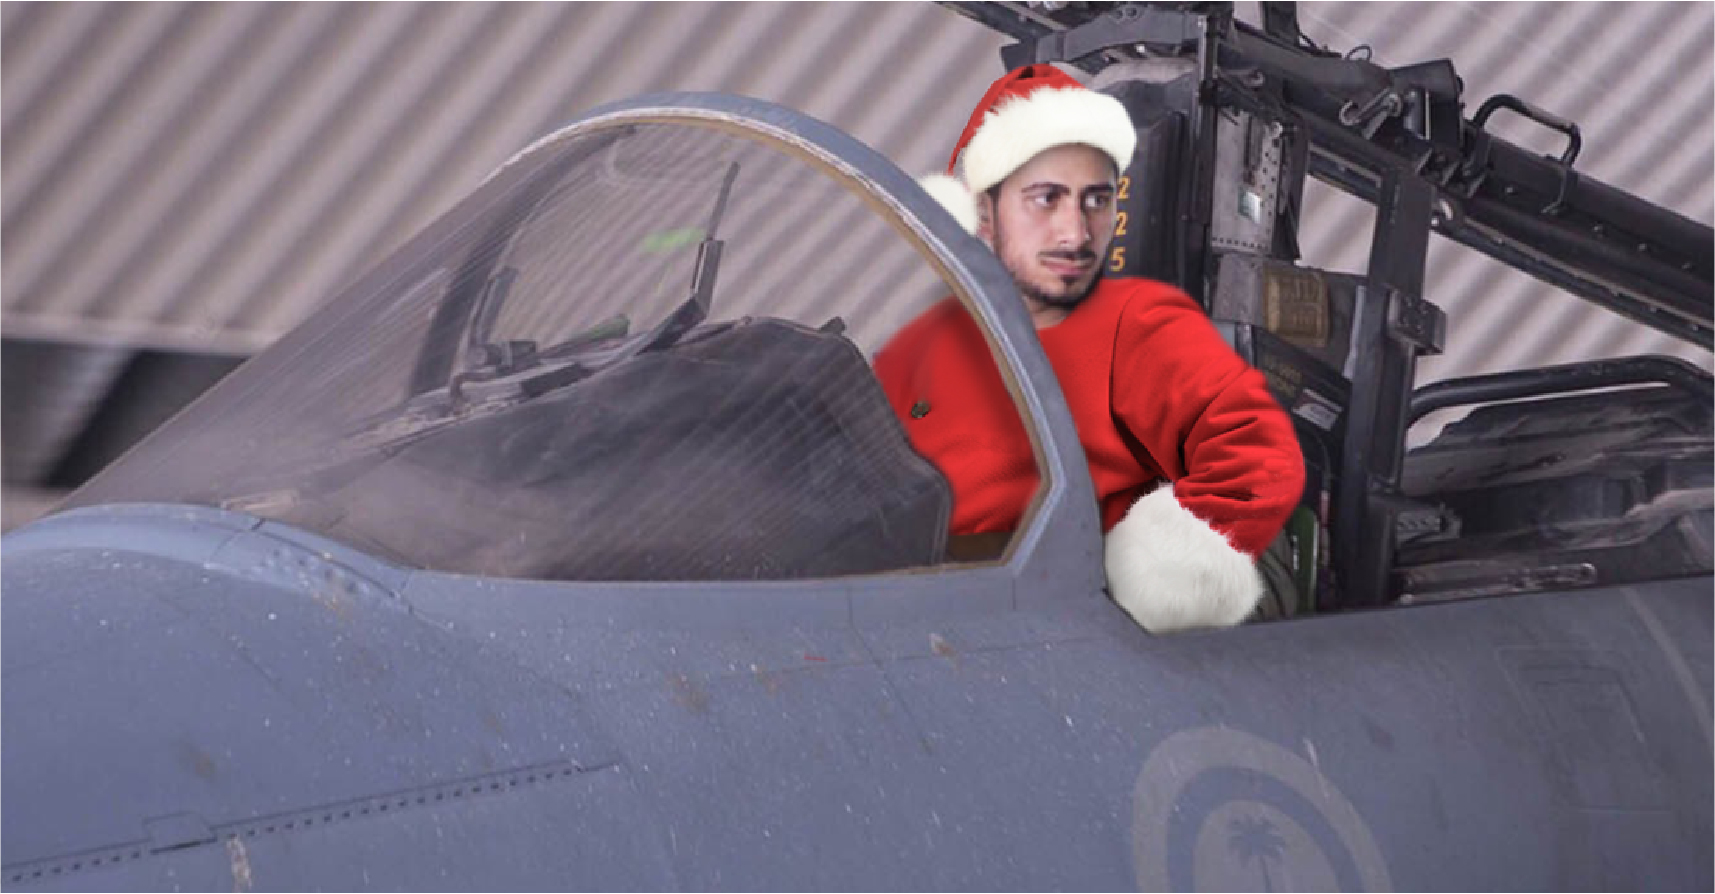 صورة السعودية تفرض على طياريها ارتداء ملابس بابا نويل أثناء إلقاء الهدايا على الأطفال في اليمن